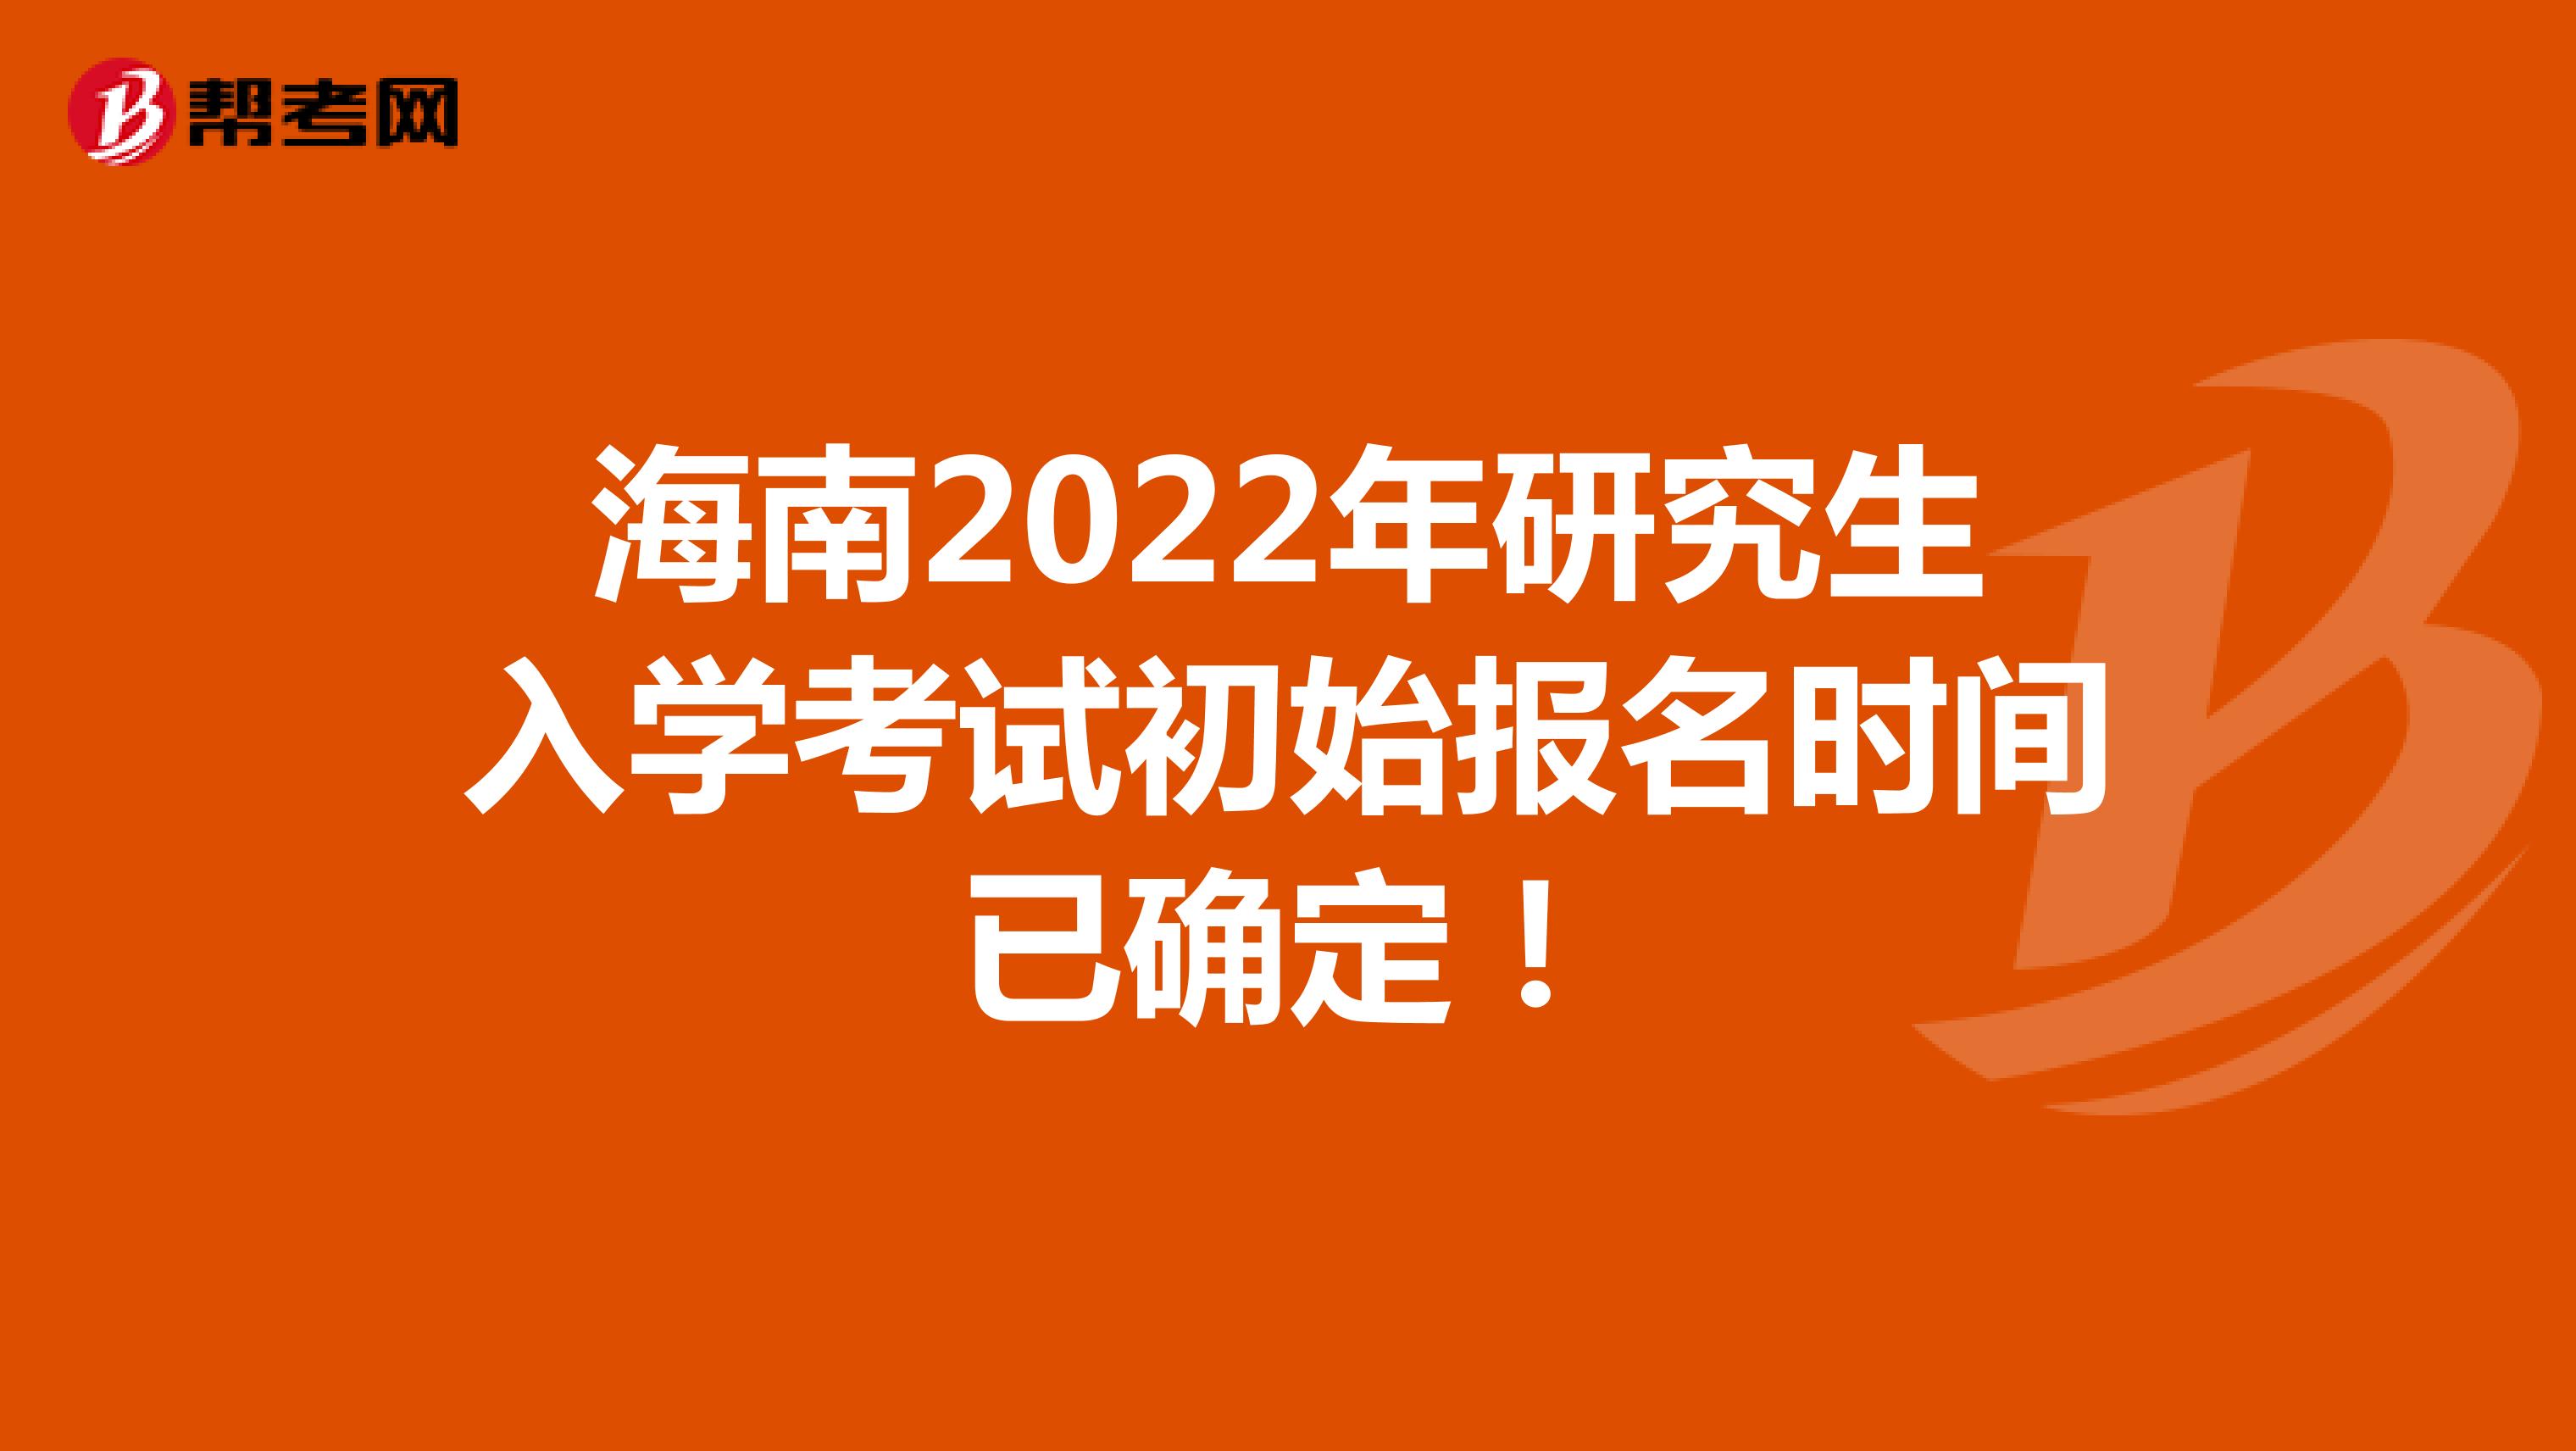 海南2022年研究生入学考试初始报名时间已确定！